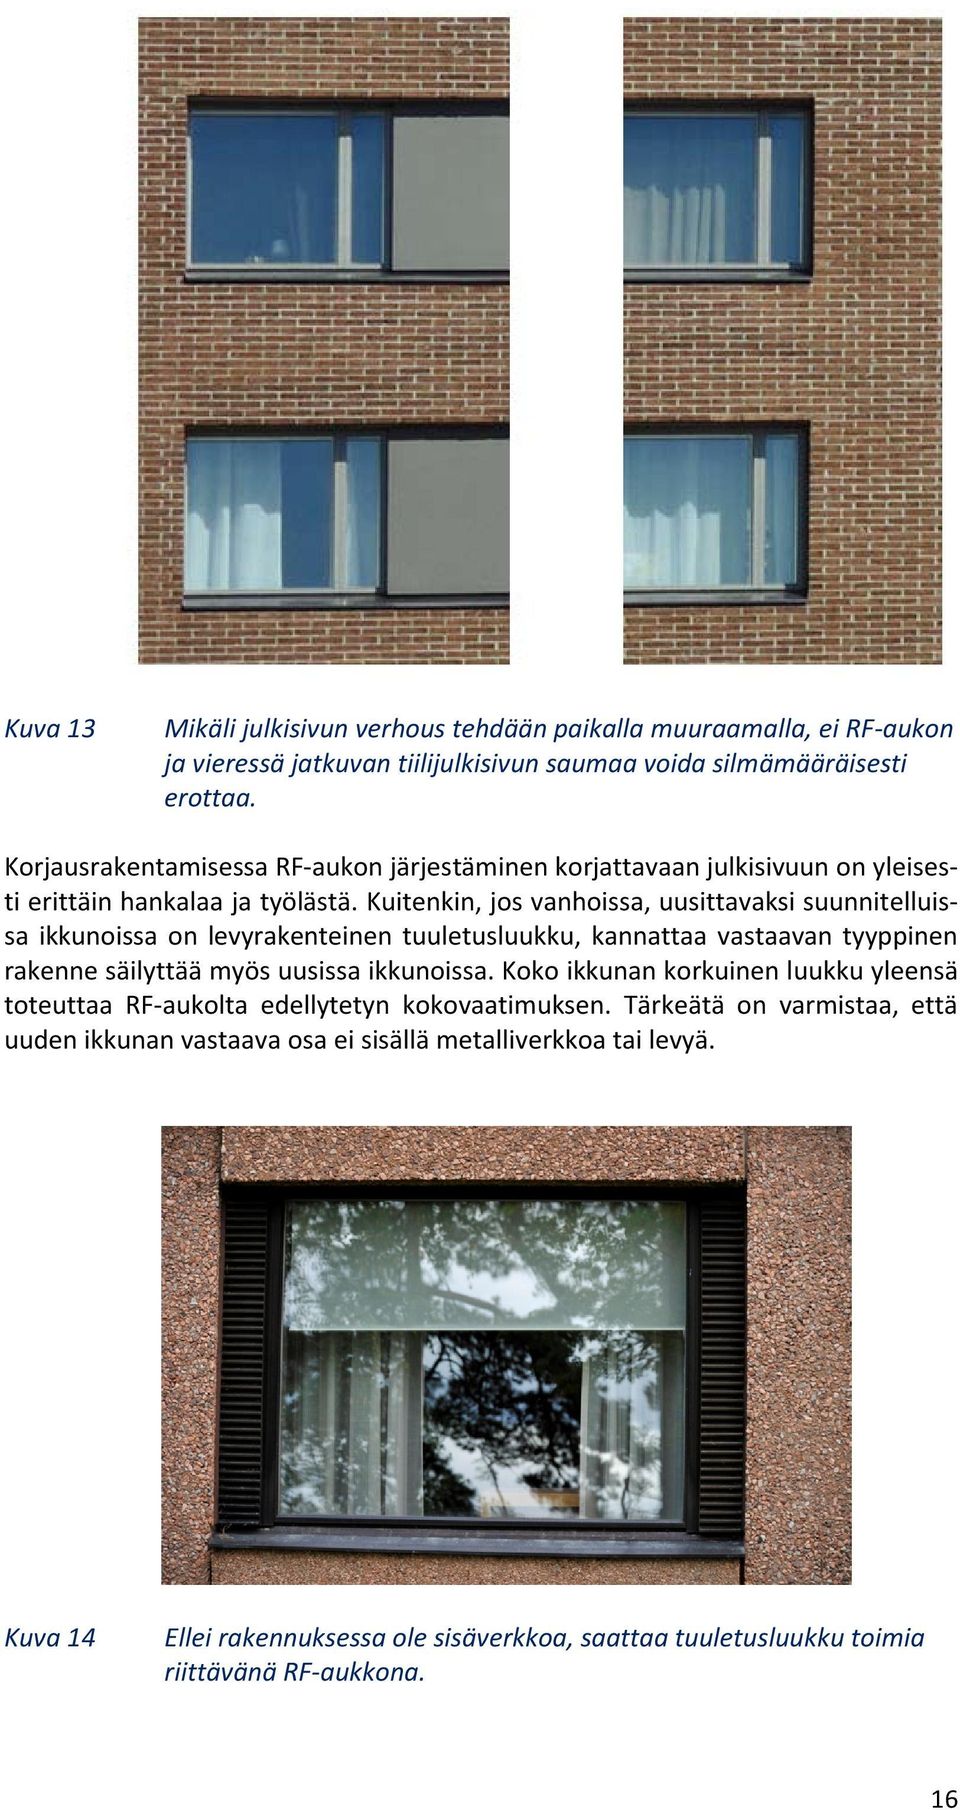 Kuitenkin, jos vanhoissa, uusittavaksi suunnitelluissa ikkunoissa on levyrakenteinen tuuletusluukku, kannattaa vastaavan tyyppinen rakenne säilyttää myös uusissa ikkunoissa.